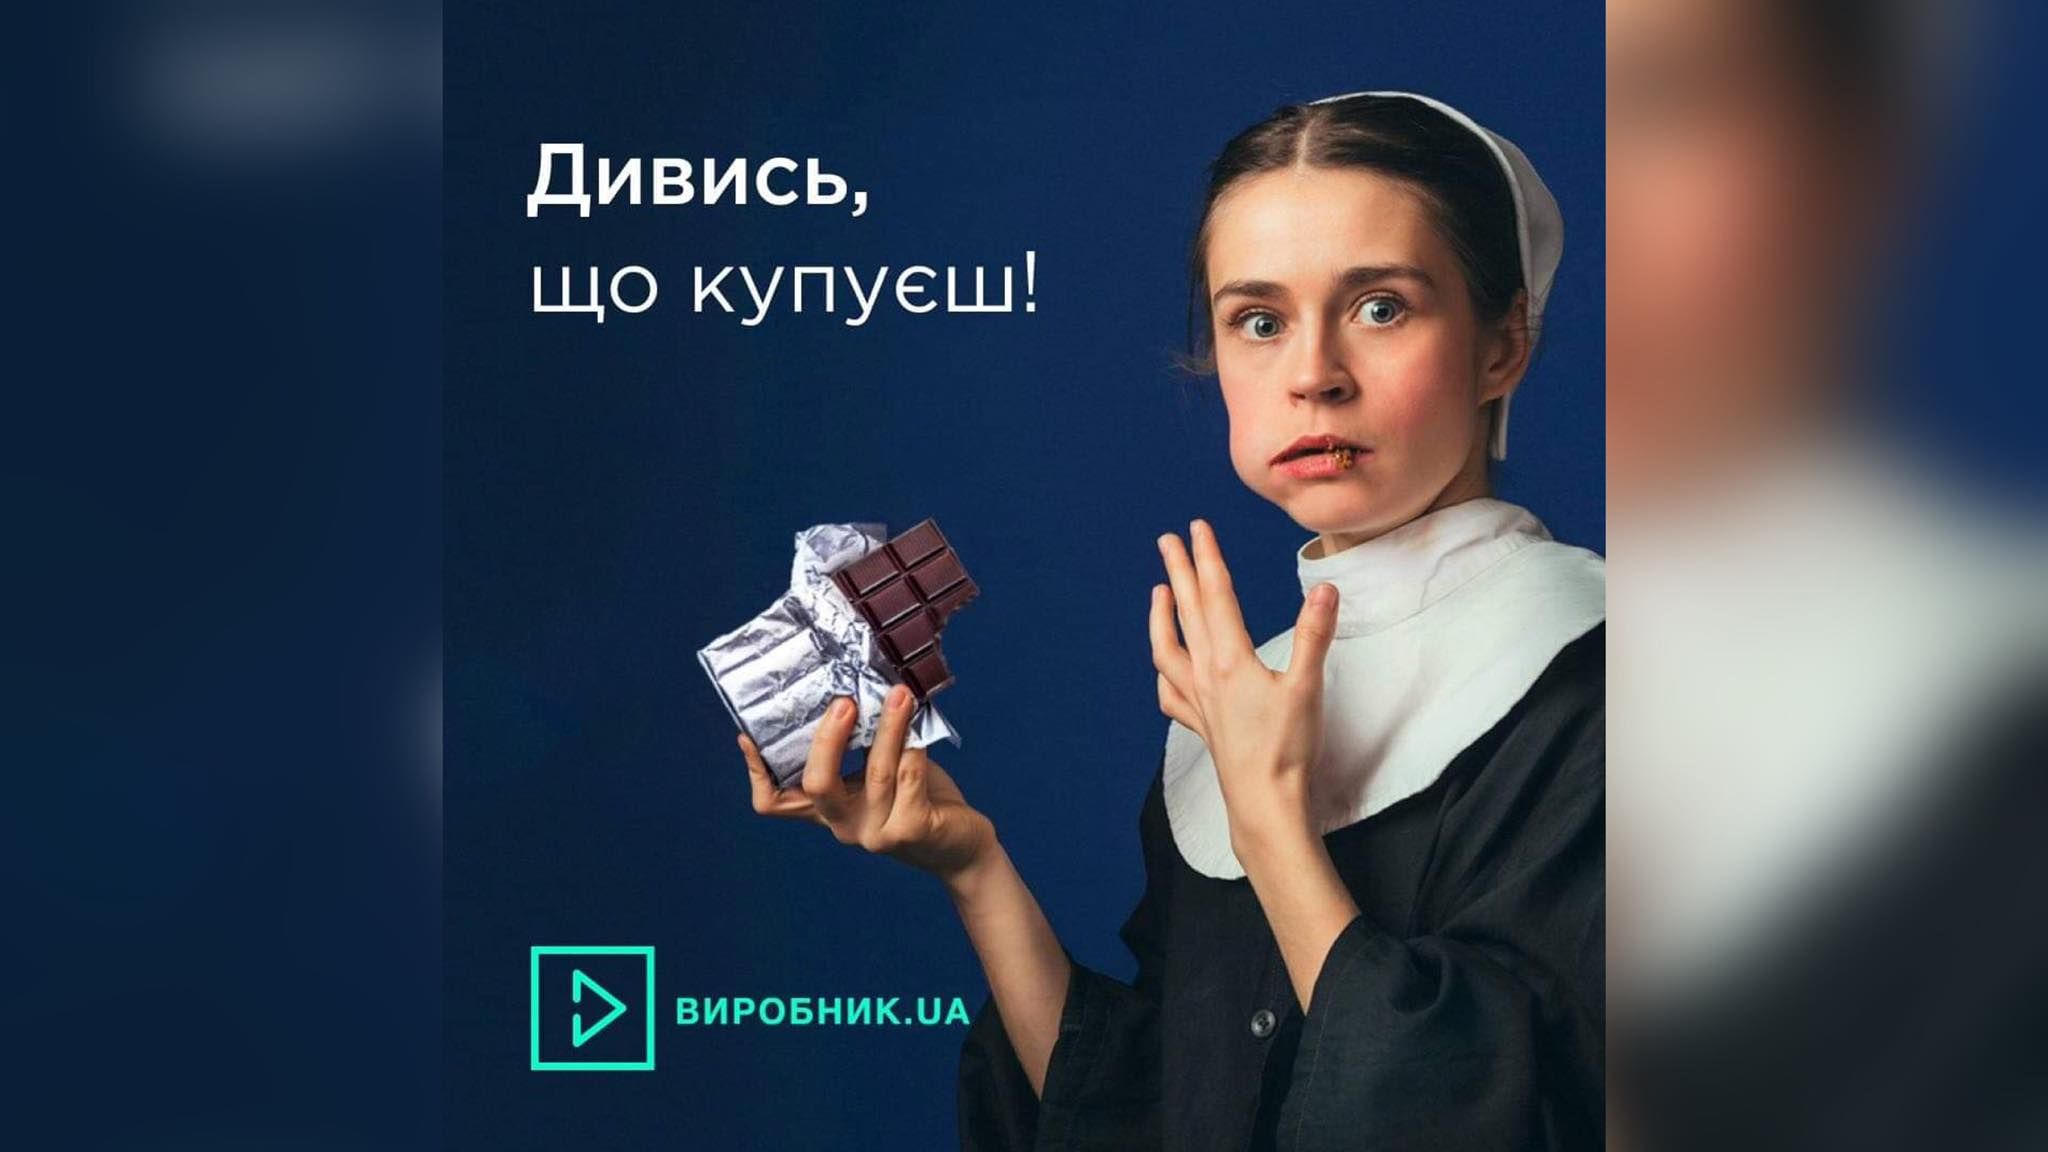 Агентство YARCHE признала Виробник.ua лучшим проектом питания